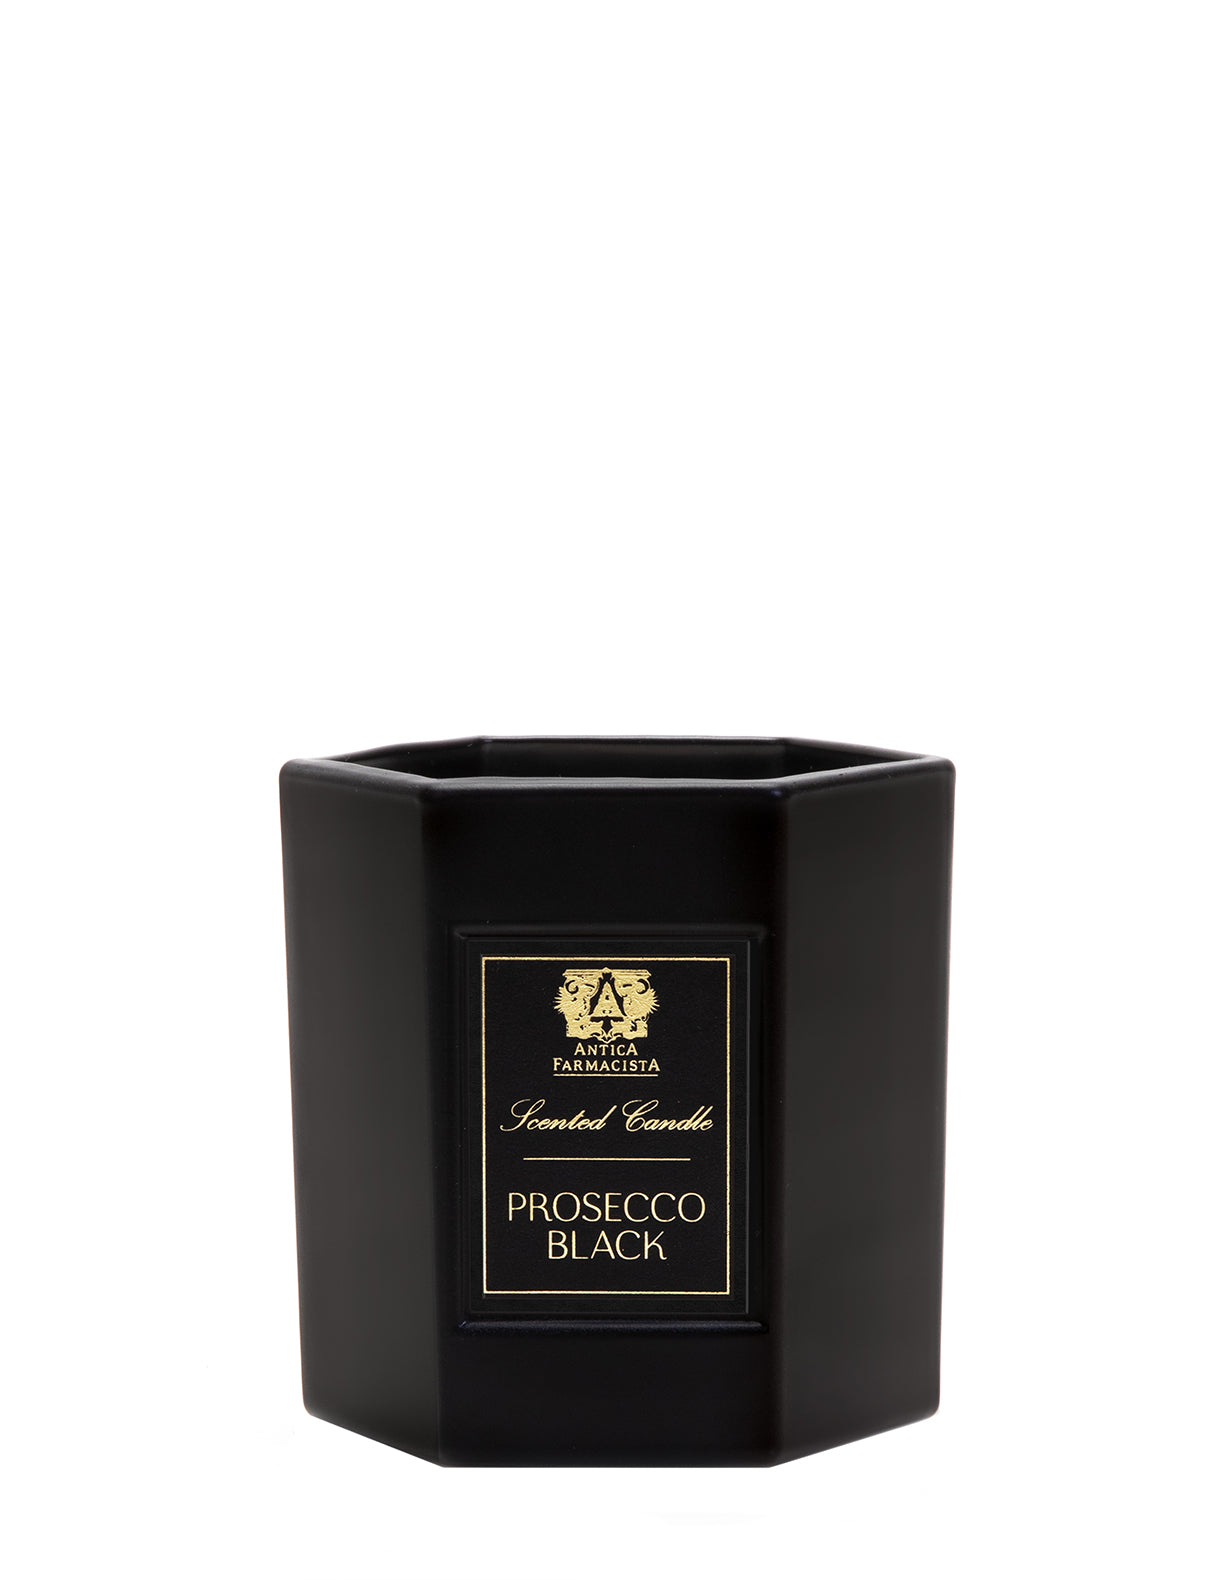 Prosecco Black Candle